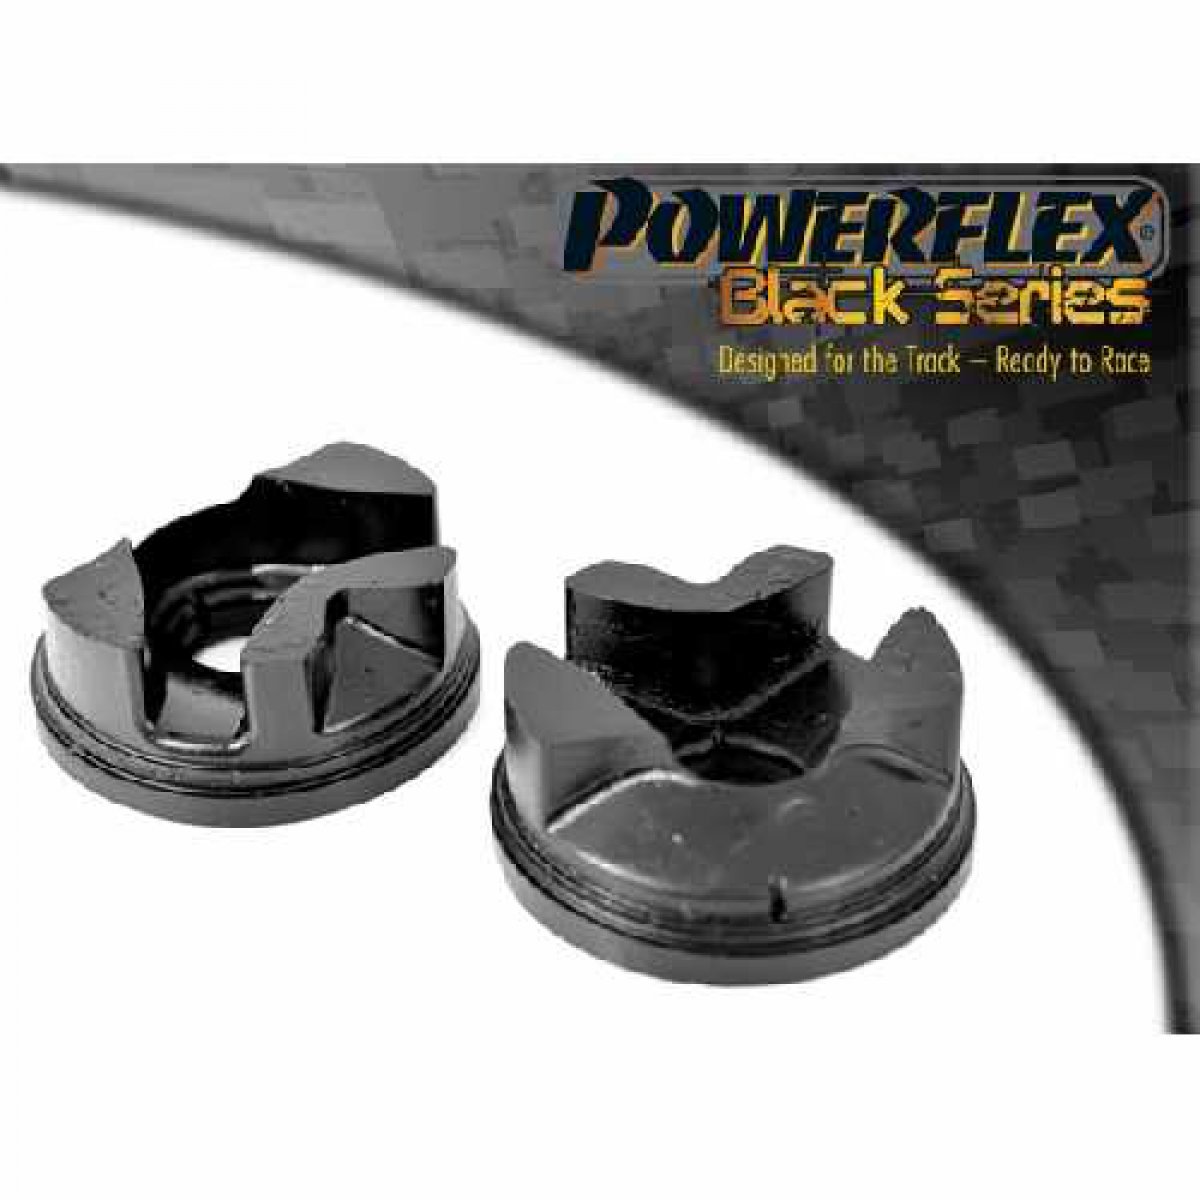 Motor Aufnahme hinten Powerflex Black für Suzuki Swift-Sport 2010 